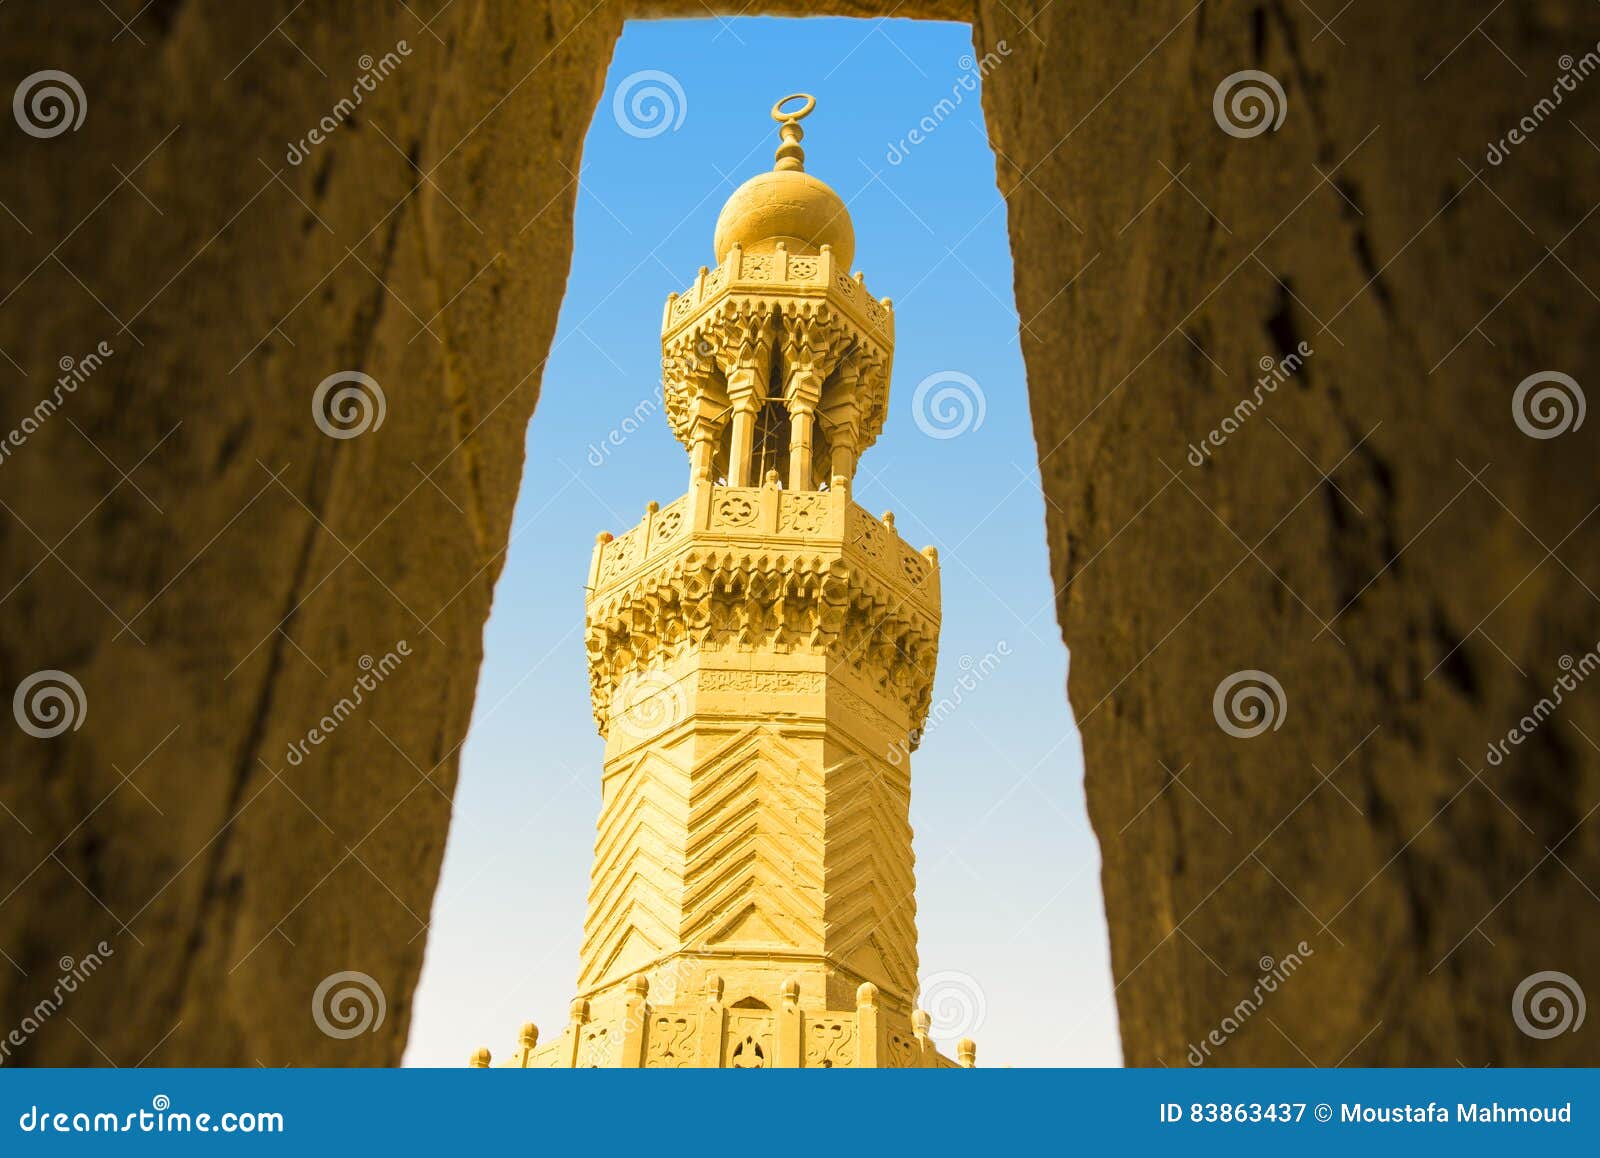 bab zuweila minaret